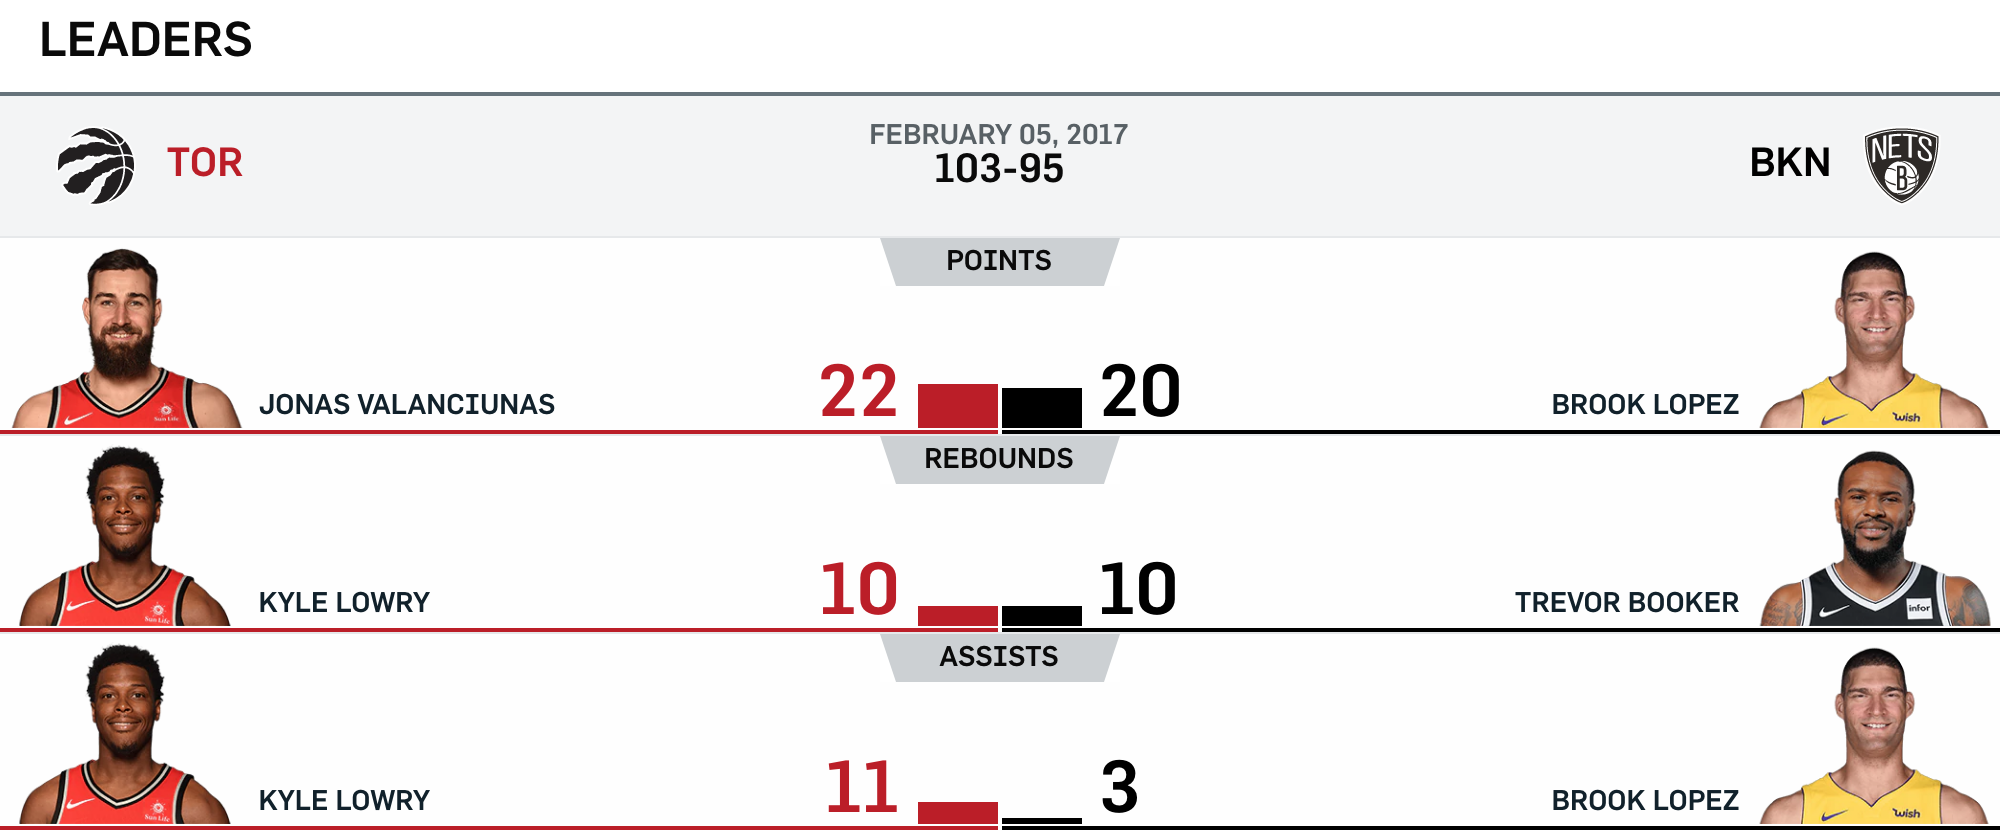 Nets vs Raptors 2-5-17 Leaders